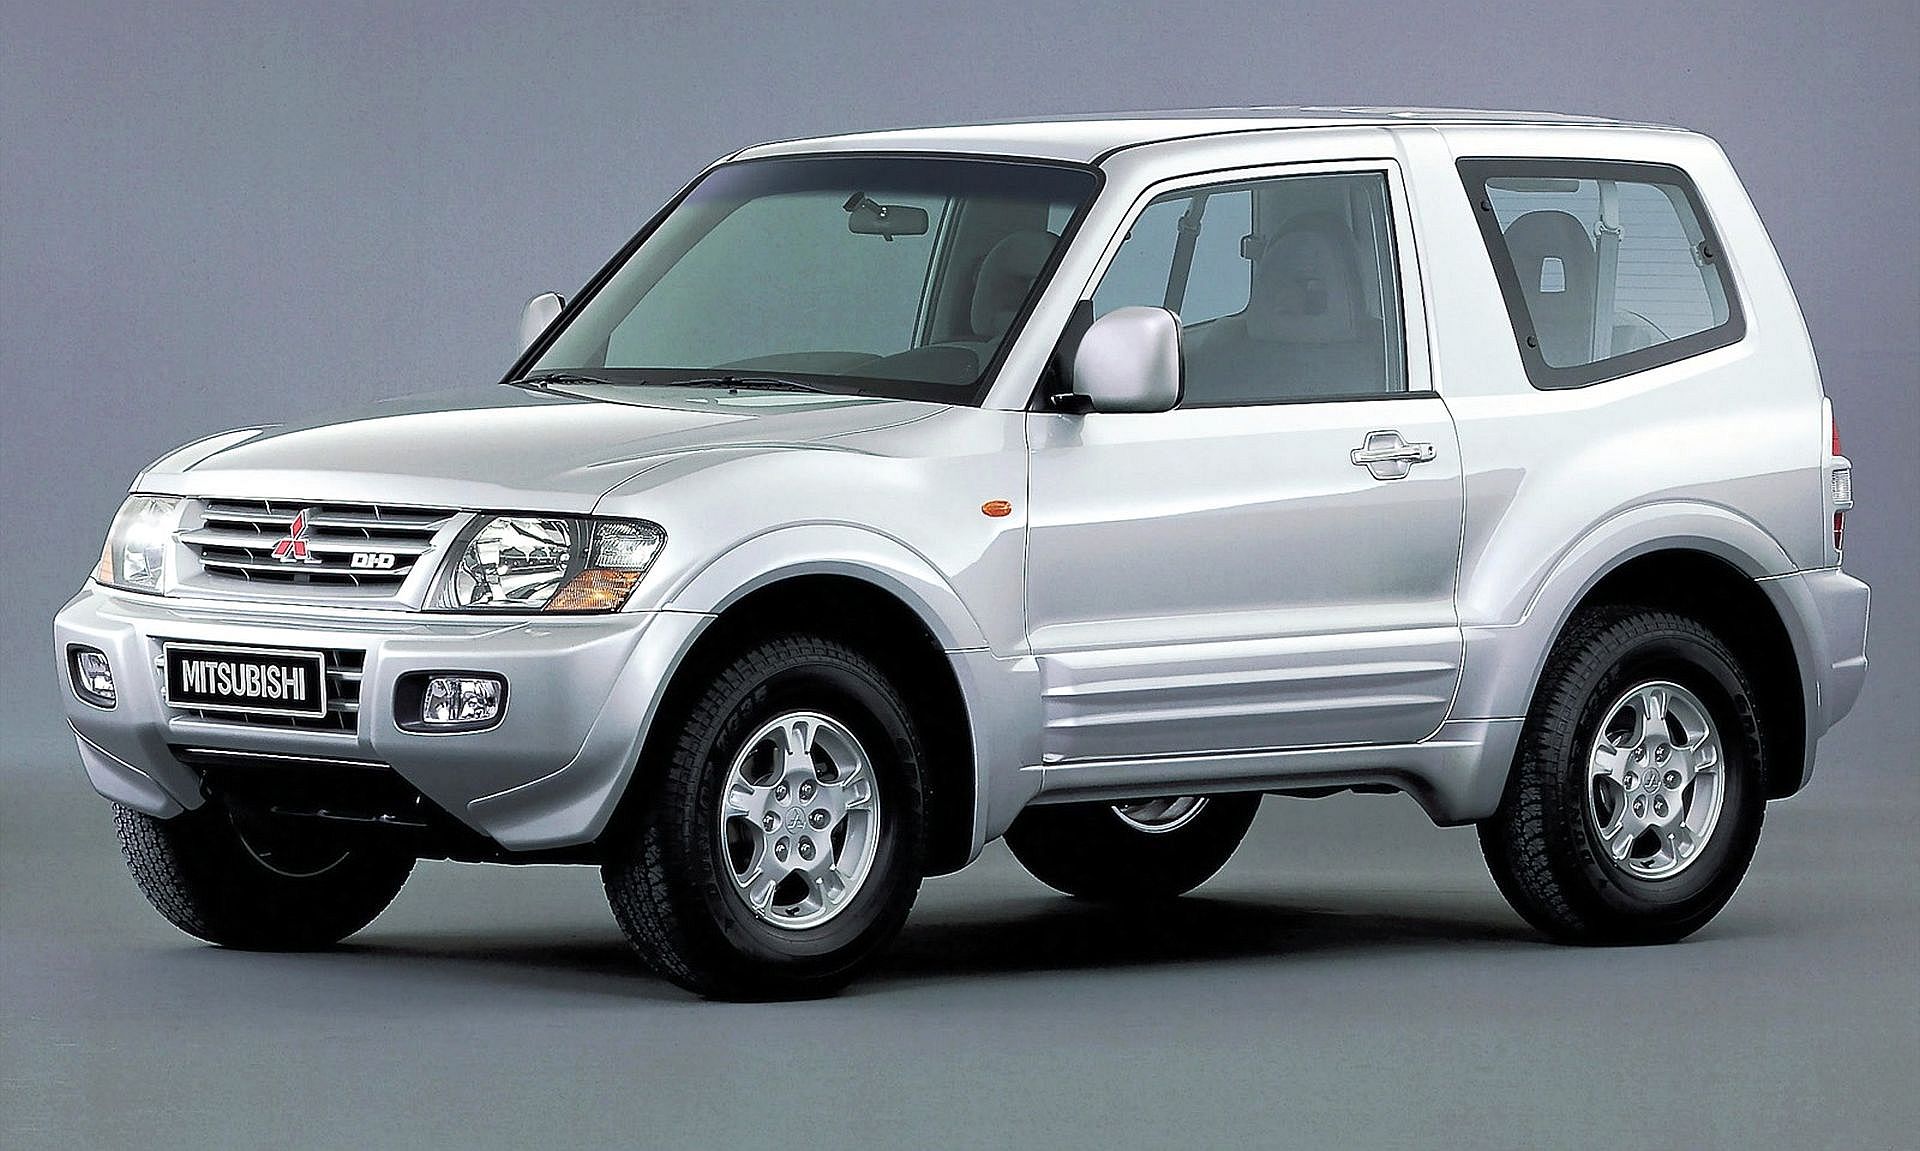 Używane Mitsubishi Pajero Iii (V60; 1999-2006) - Opinie, Dane Techniczne, Typowe Usterki